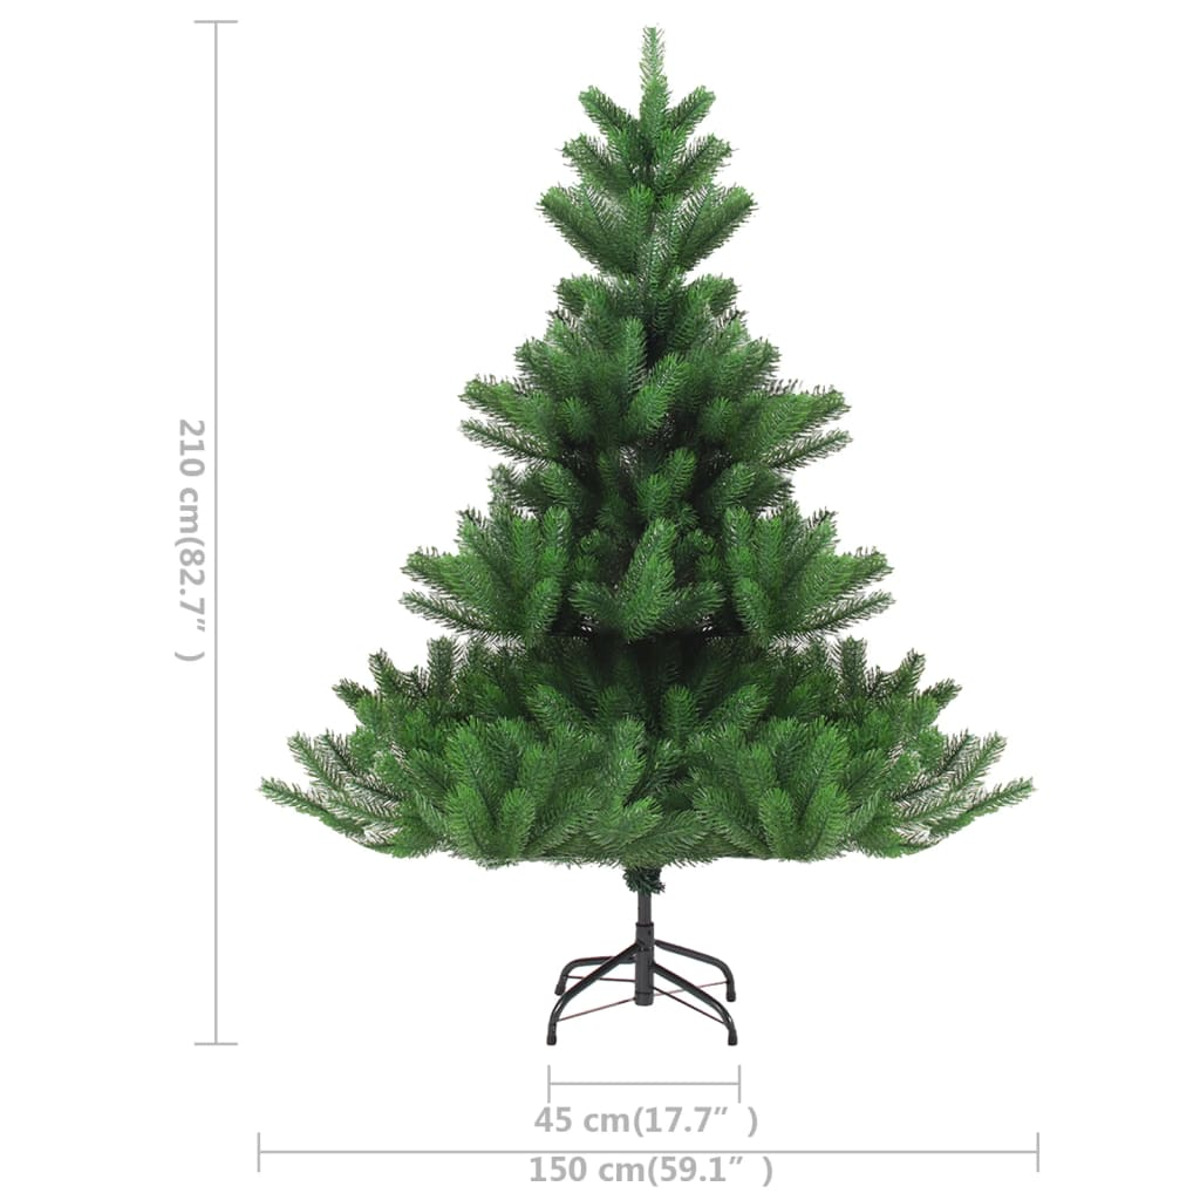 VIDAXL 3077561 Weihnachtsbaum